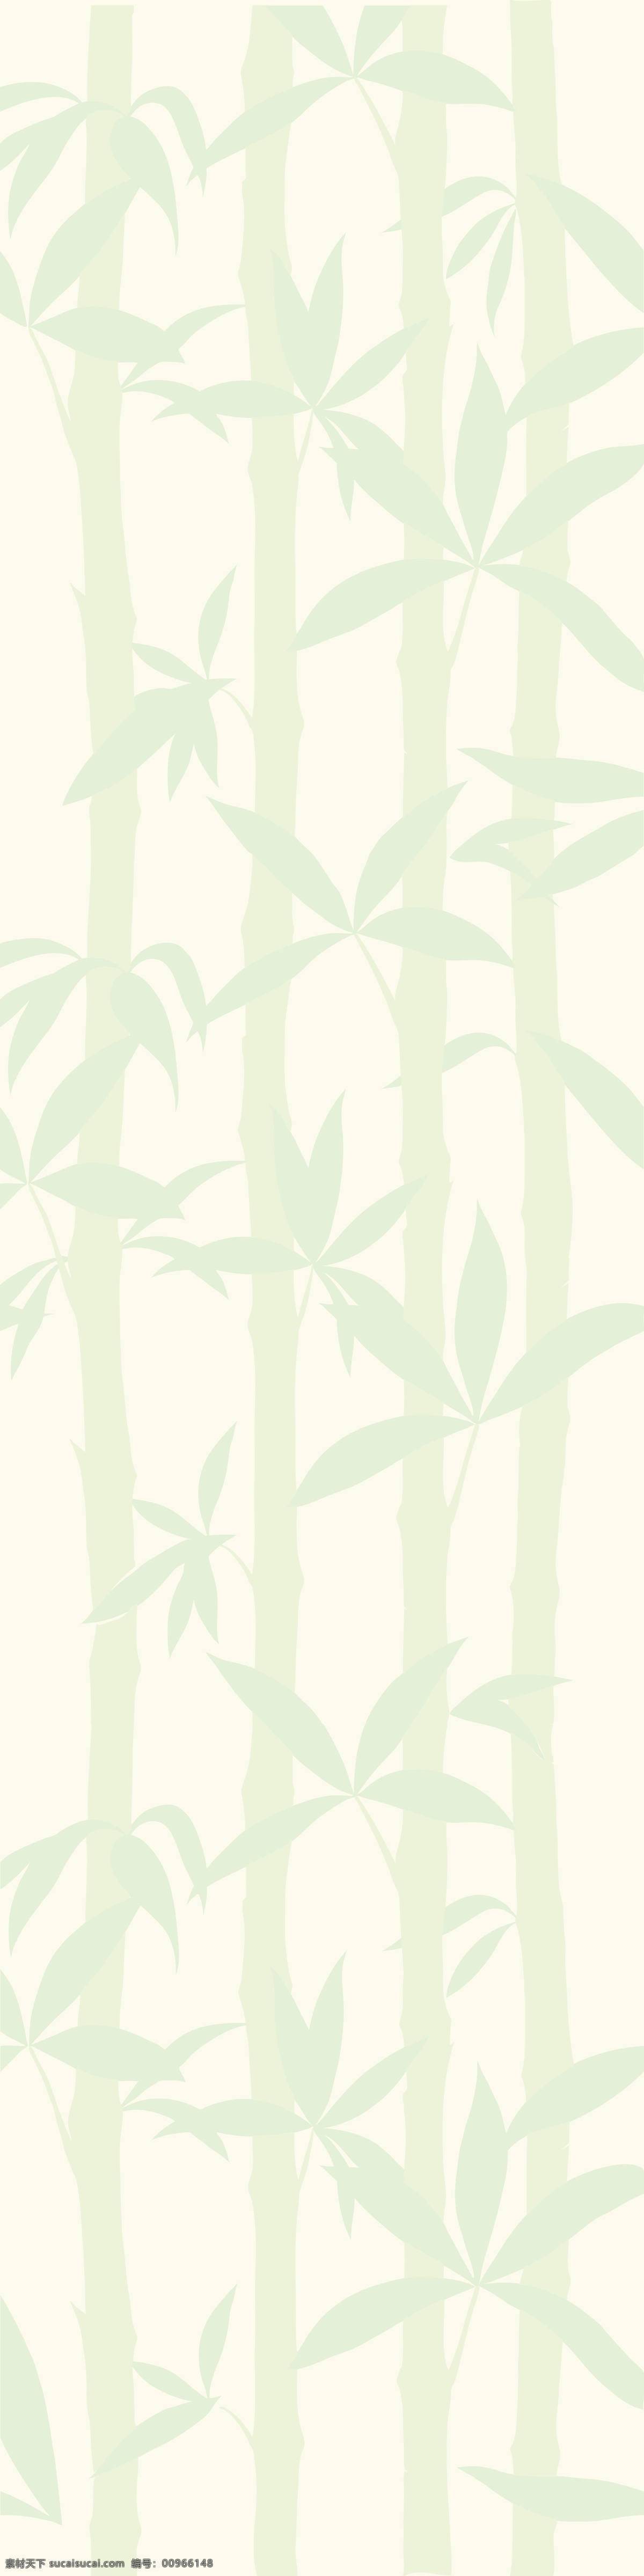 精选 花朵 背景 插画 花纹 卡通 模板 设计稿 手绘 竹子 叶子 图案 素材元素 源文件 矢量图